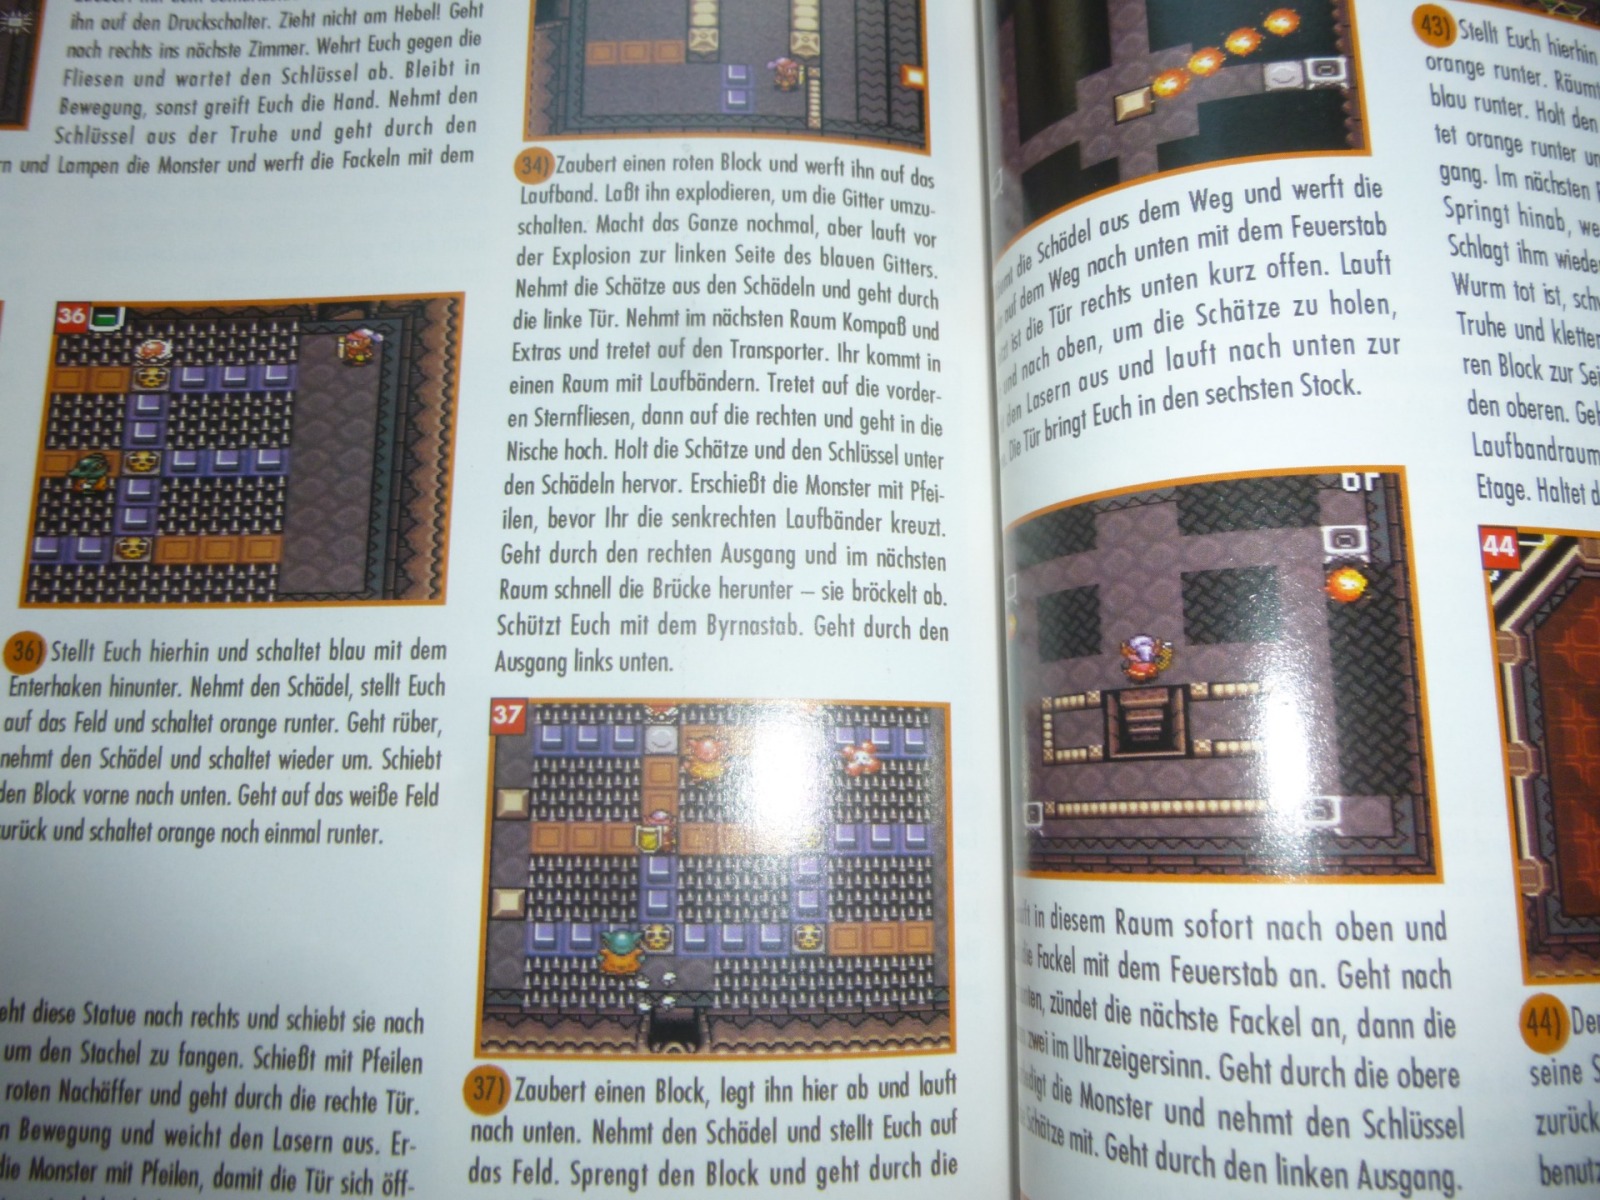 TOTAL Das unabhängige Magazin - 100 Nintendo - Ausgabe 9/93 1993 32